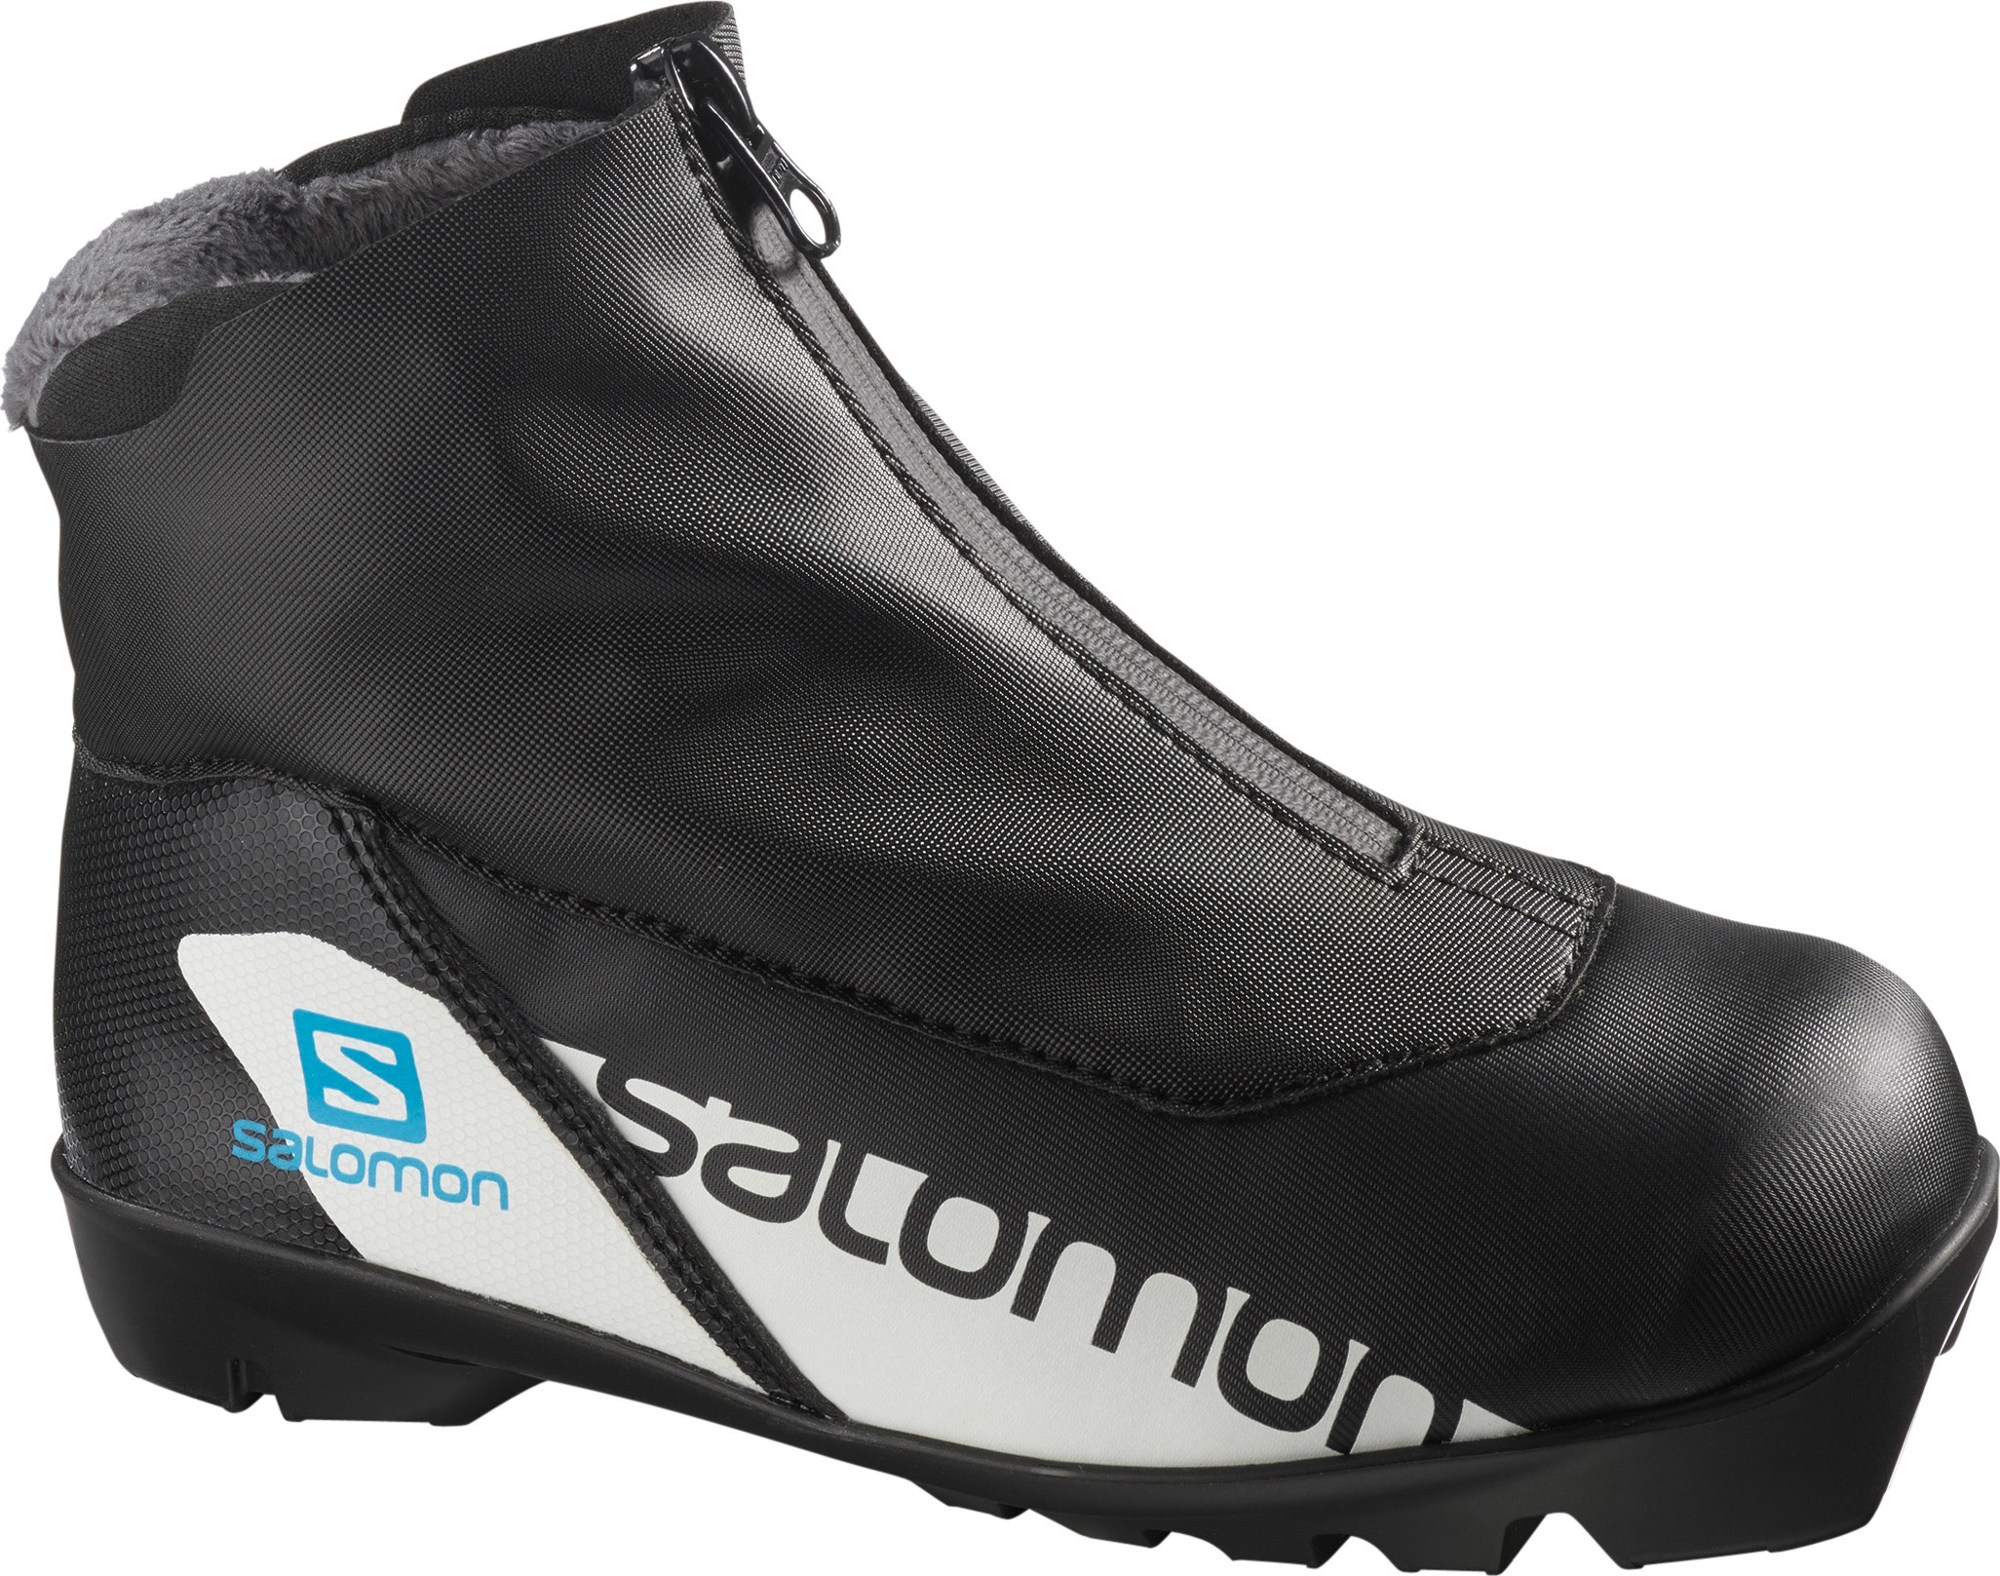 Ботинки для беговых лыж RC Prolink Jr. — Детские Salomon, черный ботинки для беговых лыж salomon vitane 5 5